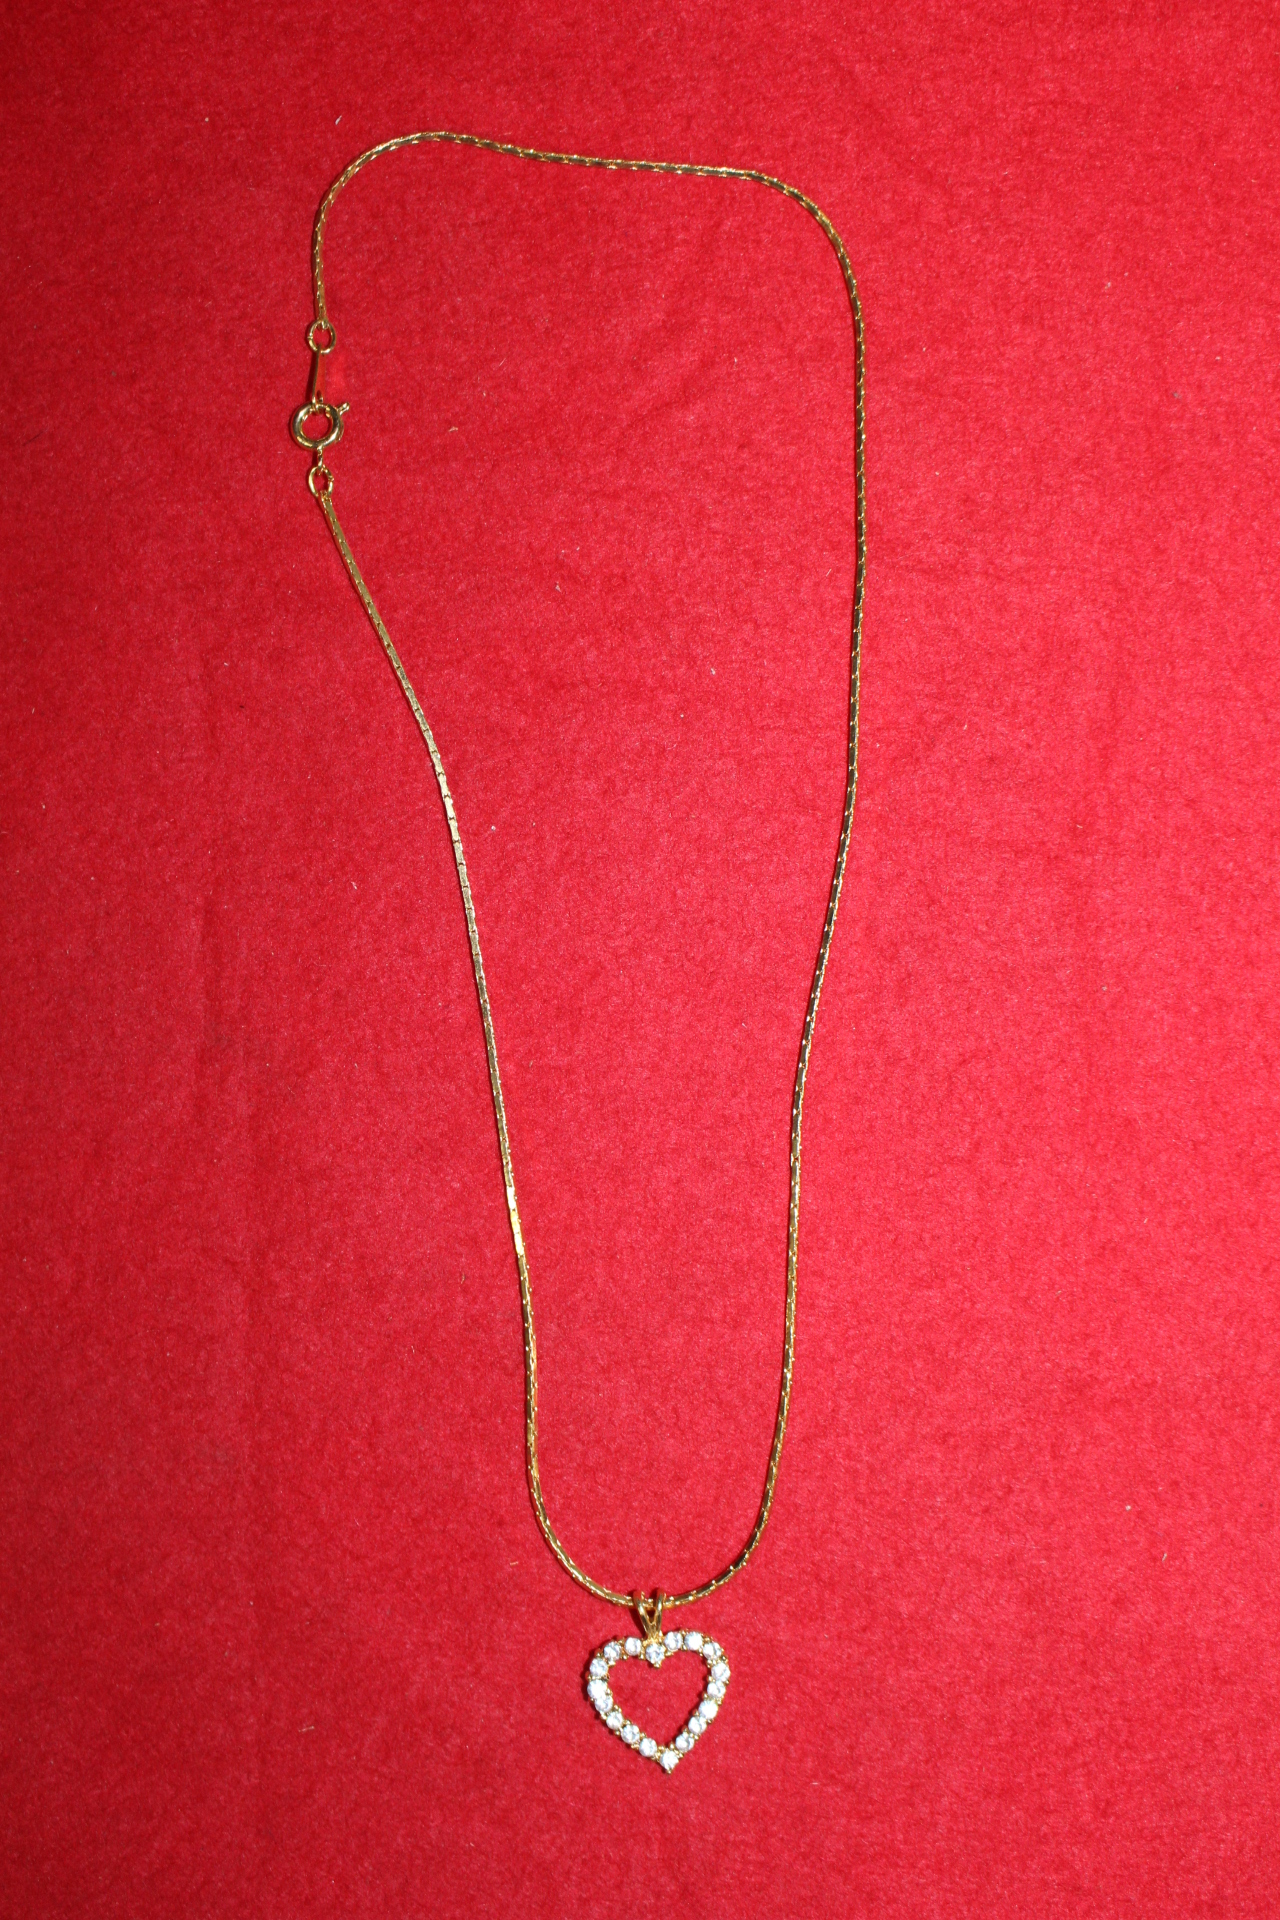 45-청동합금에 하트모양 보석이 장식된 목걸이